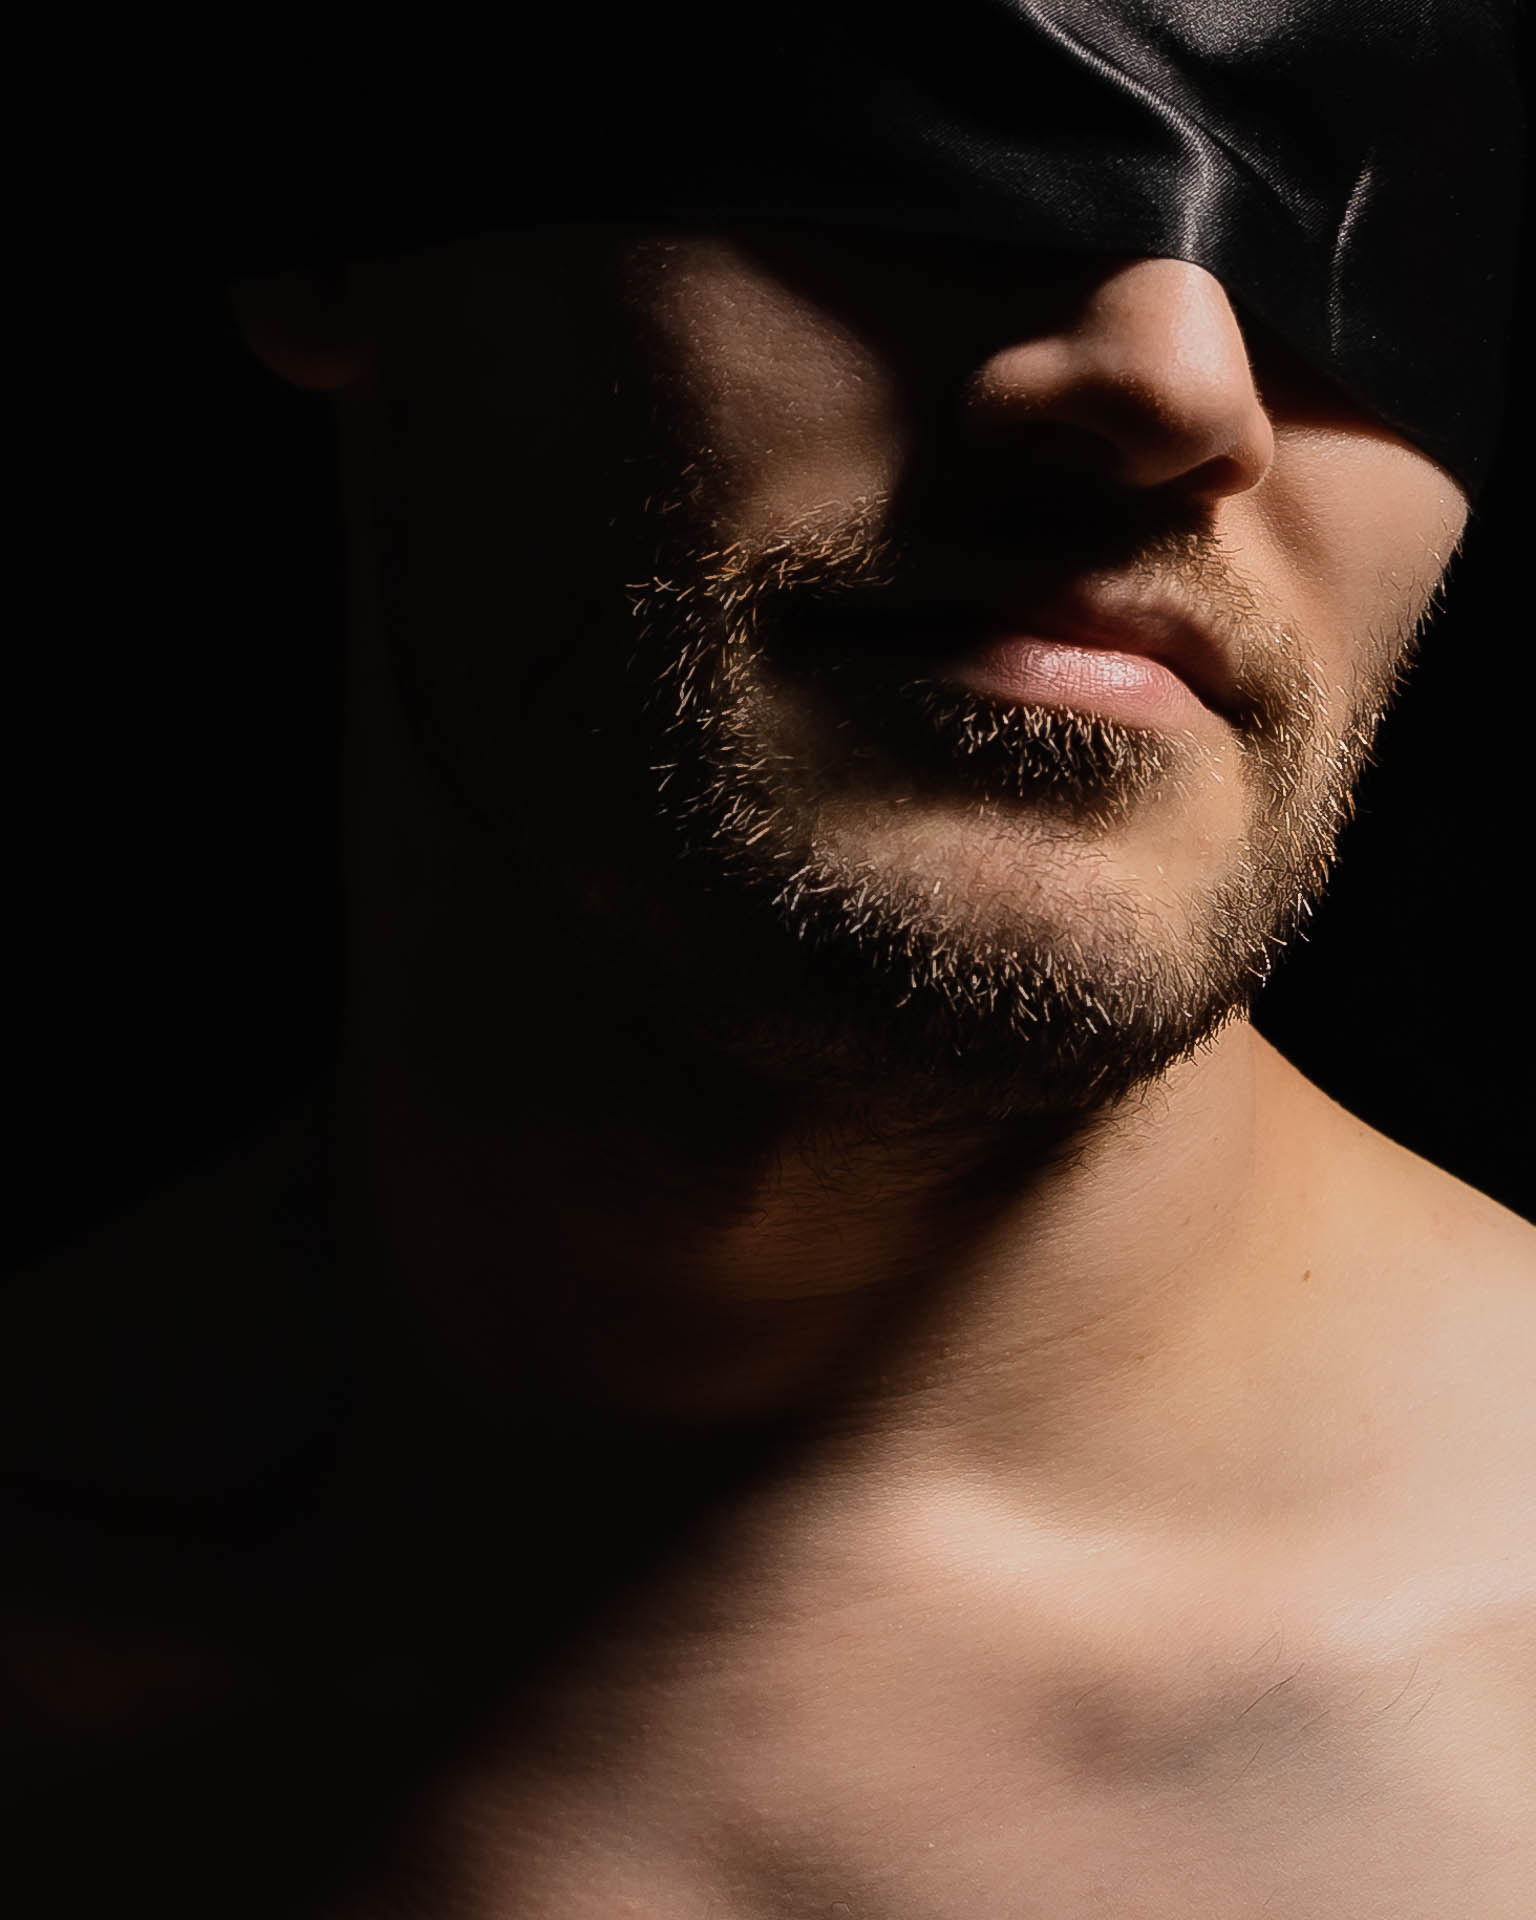 Ein Bodypart-Foto: Mann mit Bart und Augenbinde, close-up